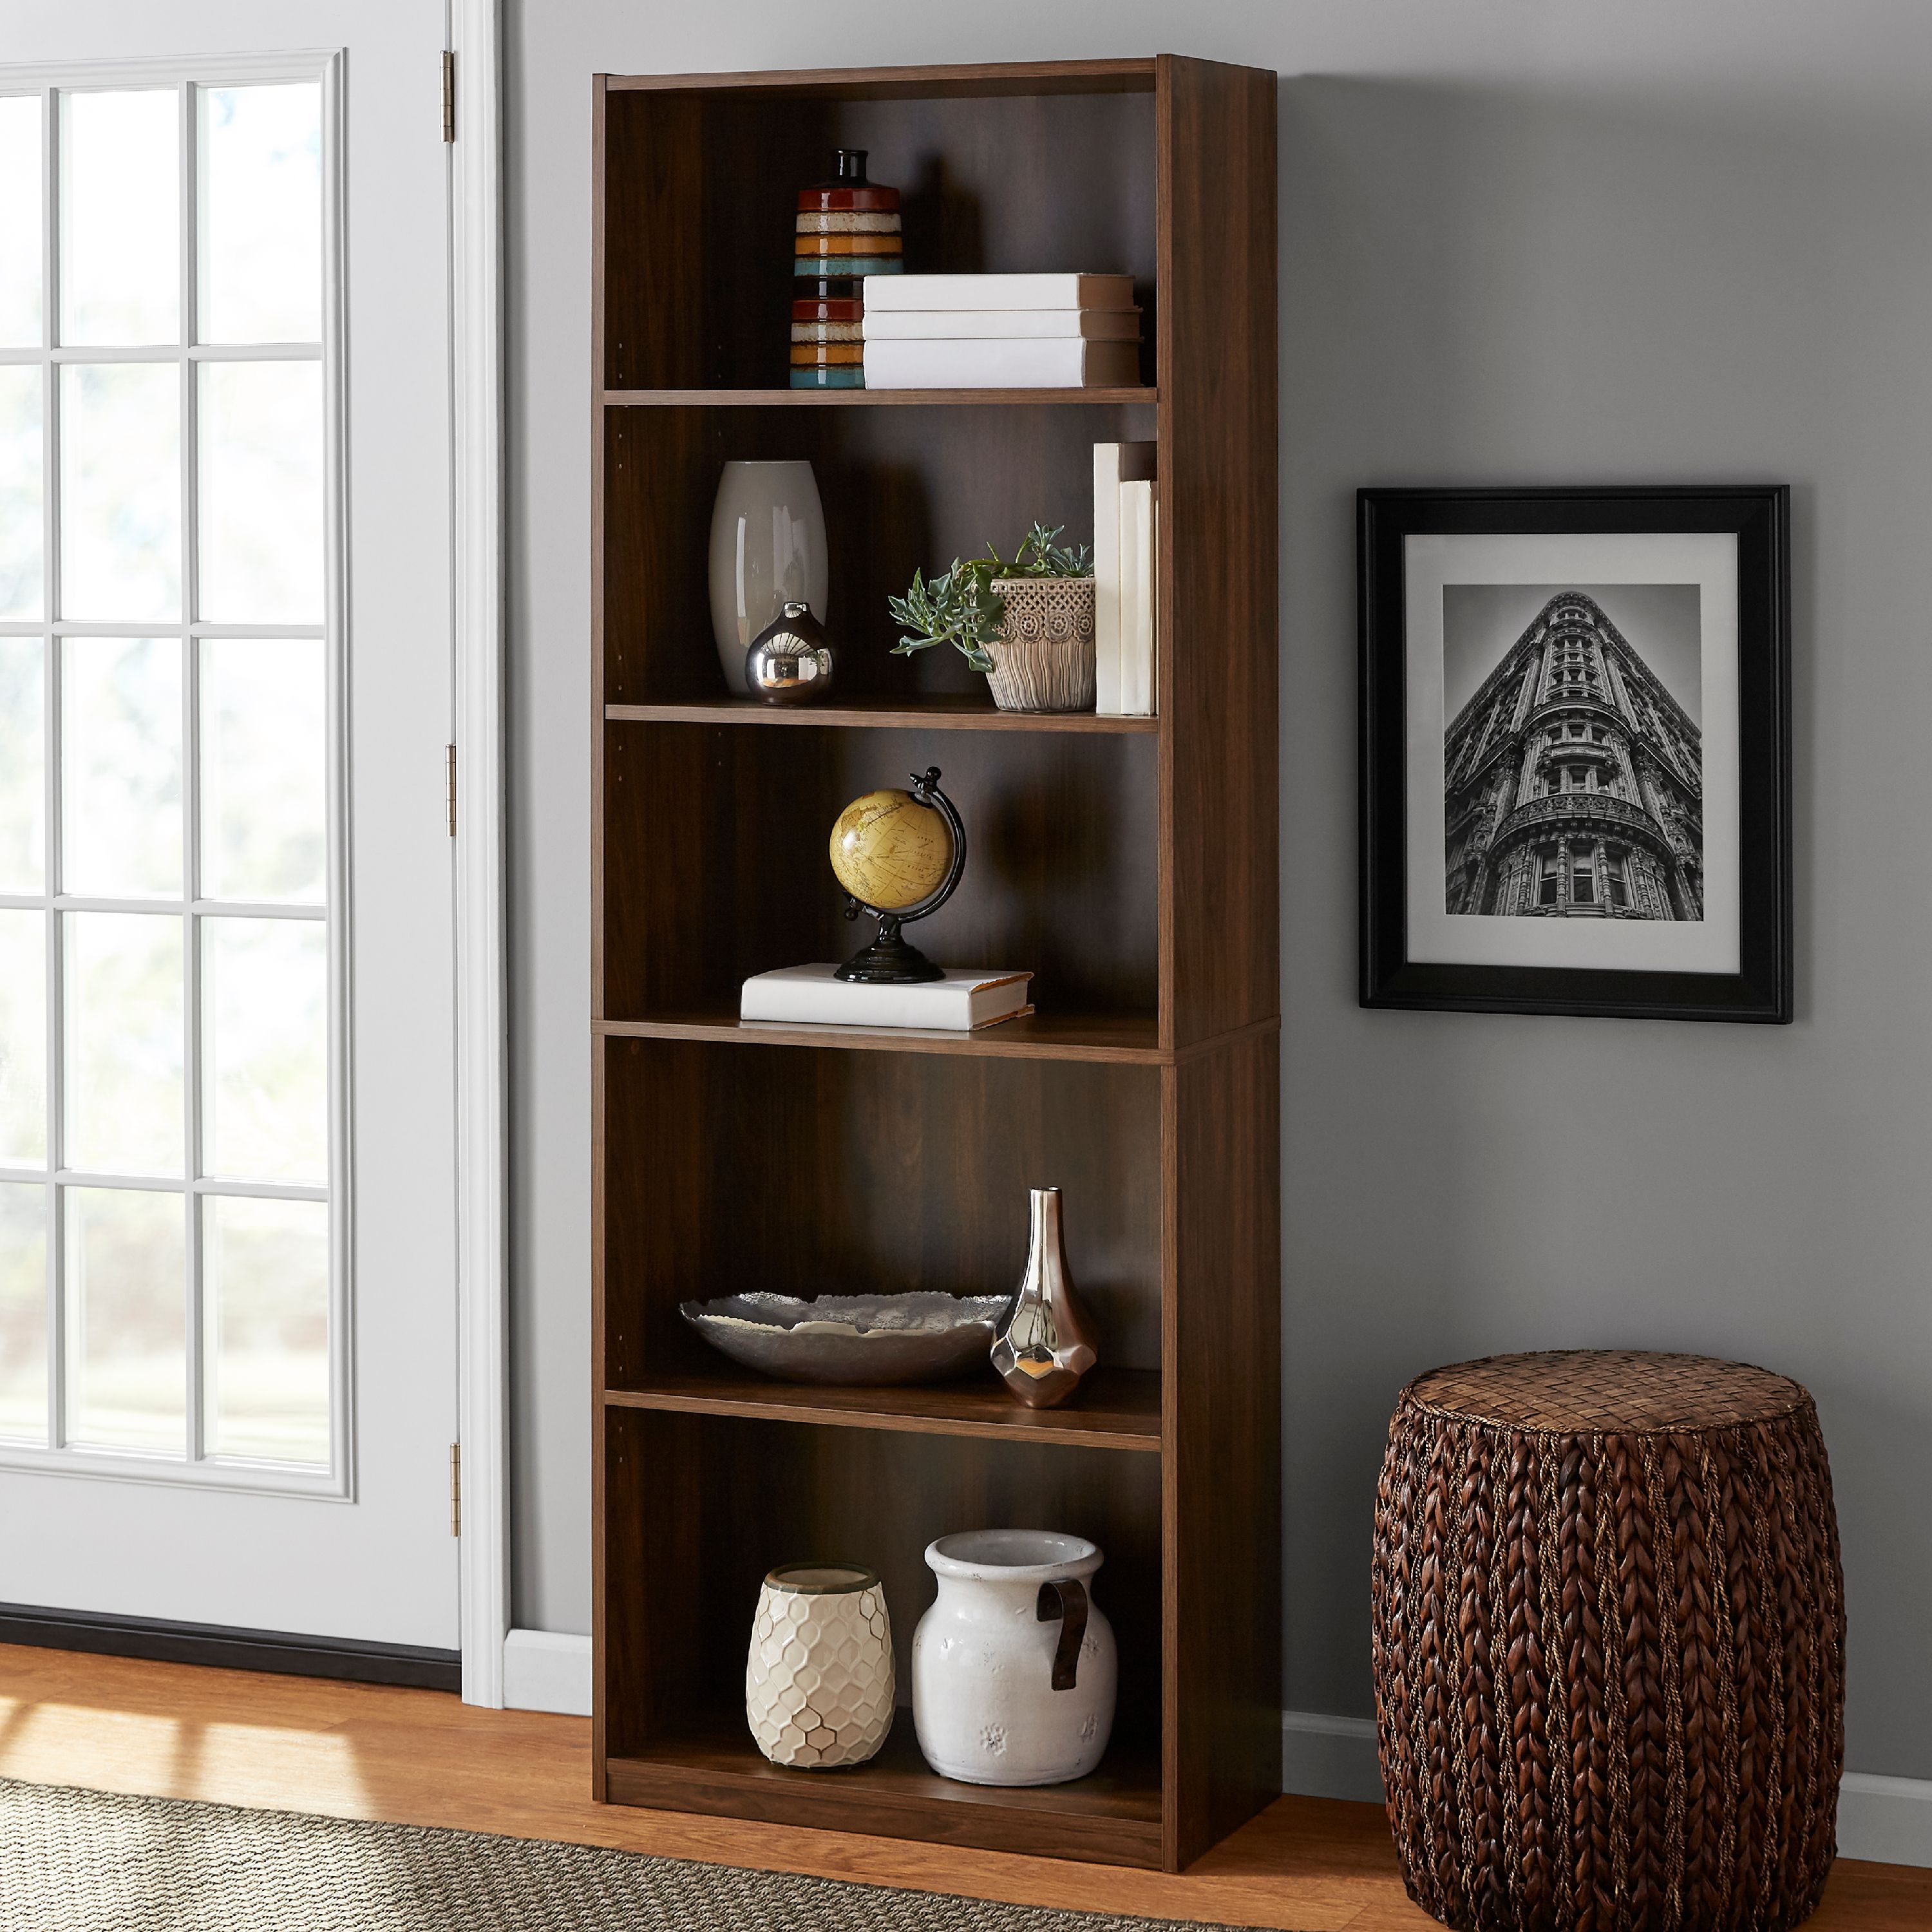 Mainstays 5-Shelf Bookcase with Adjustable Shelves, Canyon Walnut - image 1 of 5